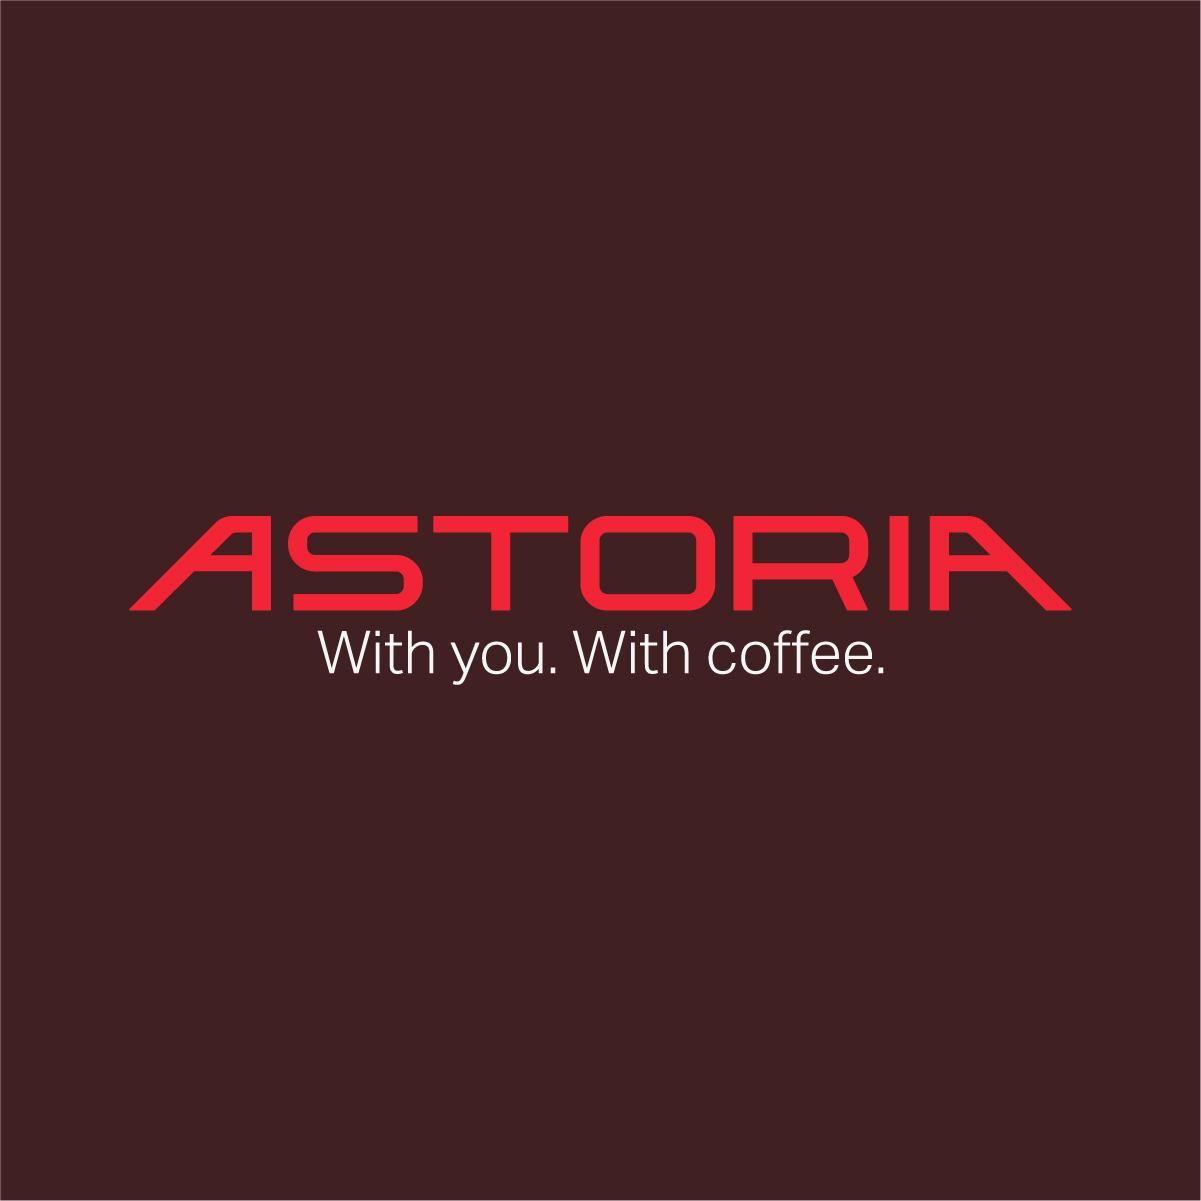 (c) Astoria.com